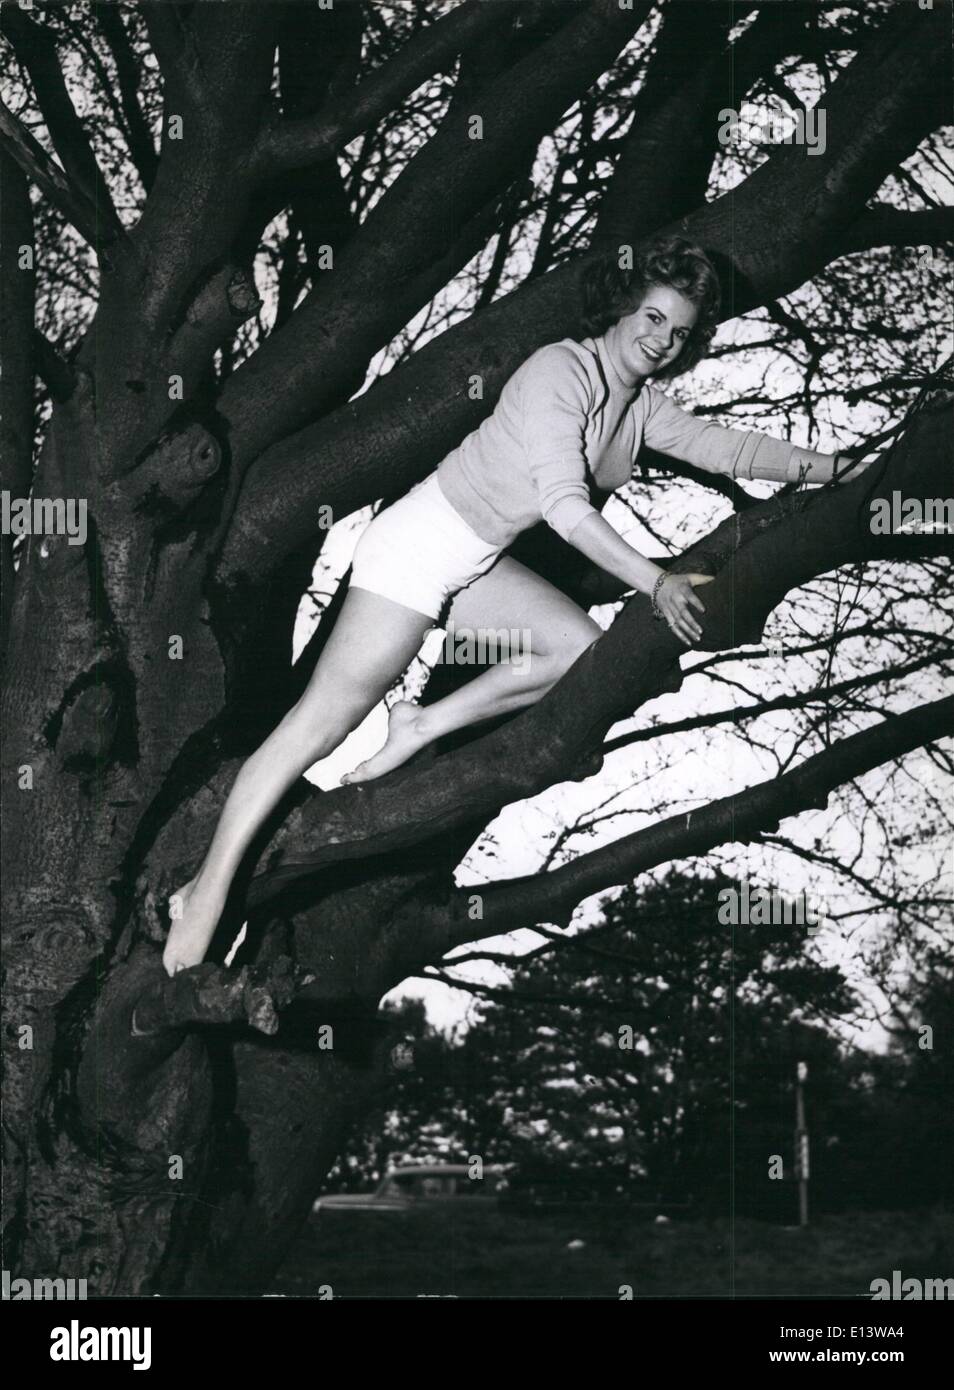 27. März 2012 - Wir verneigen uns an dieses Mädchen von den Zweigen: zwei Arten von Gliedmaßen hier. Die formschöne Glieder der Baum Liebhaber Marilyn Davis, und die Glieder von den hohen Bäumen, in denen sie liebt es, sich zu entfalten. Marilyn ist wie zu Hause in den Wäldern als vor den Fernsehkameras - aber sie lieber unter freiem Himmel Leben des ersteren. Stockfoto